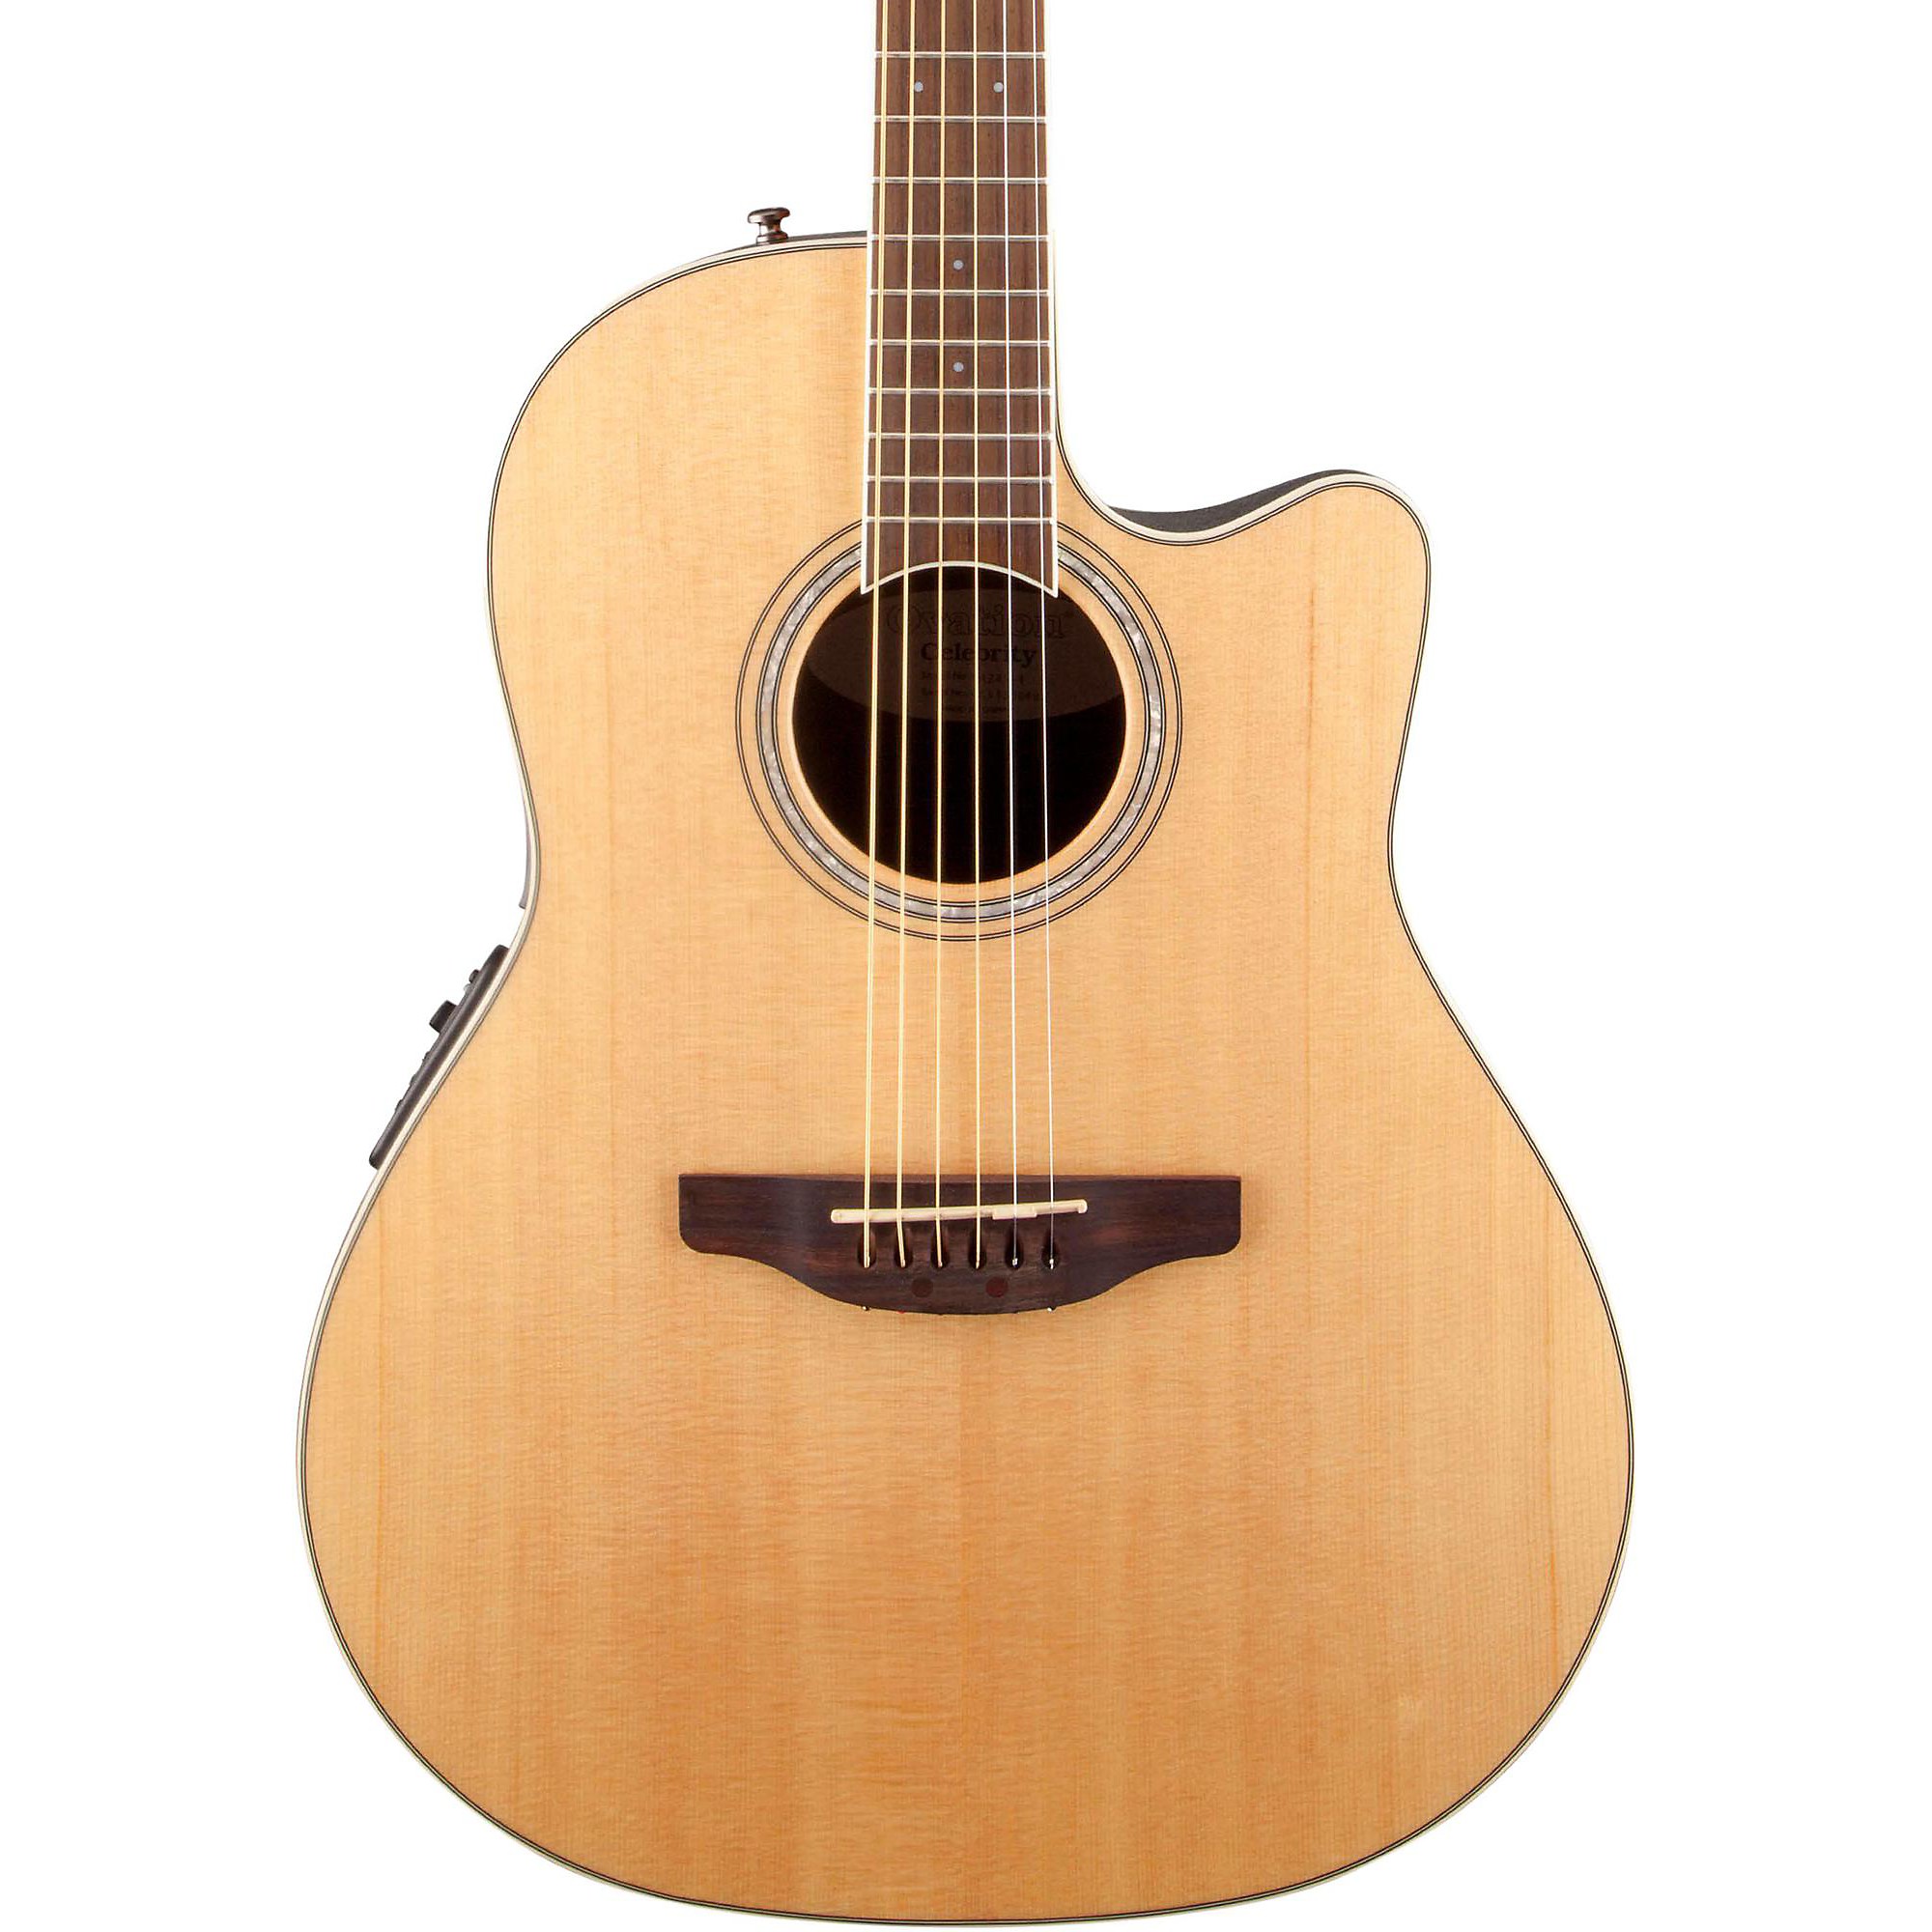 Акустически-электрическая гитара Ovation Celebrity Standard средней глубины с вырезом Natural